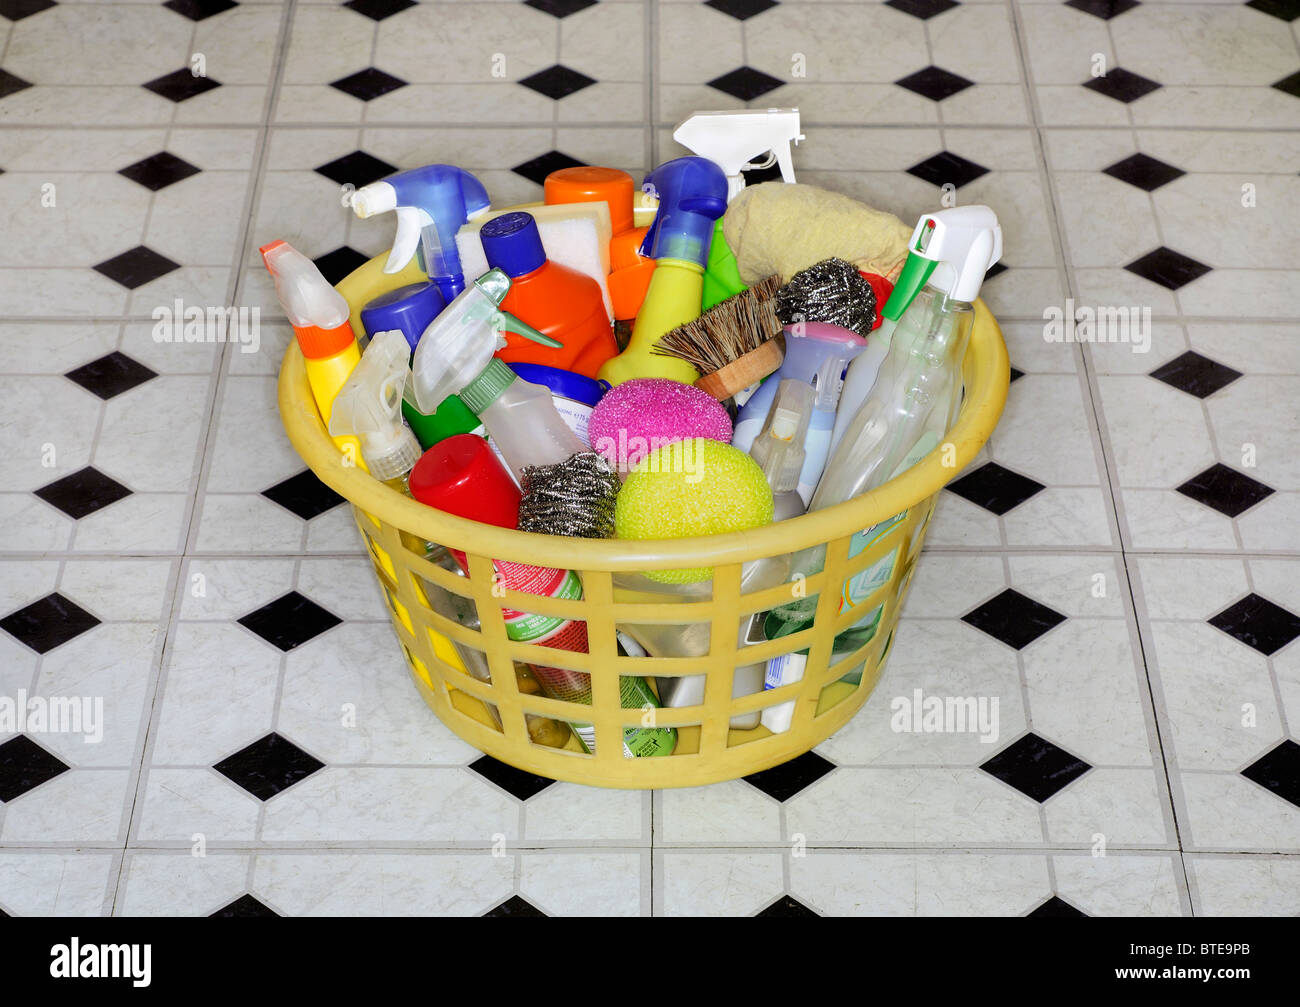 Productos Y Fuentes De Limpieza En Una Cesta Imagen de archivo - Imagen de  detergente, concepto: 115610245